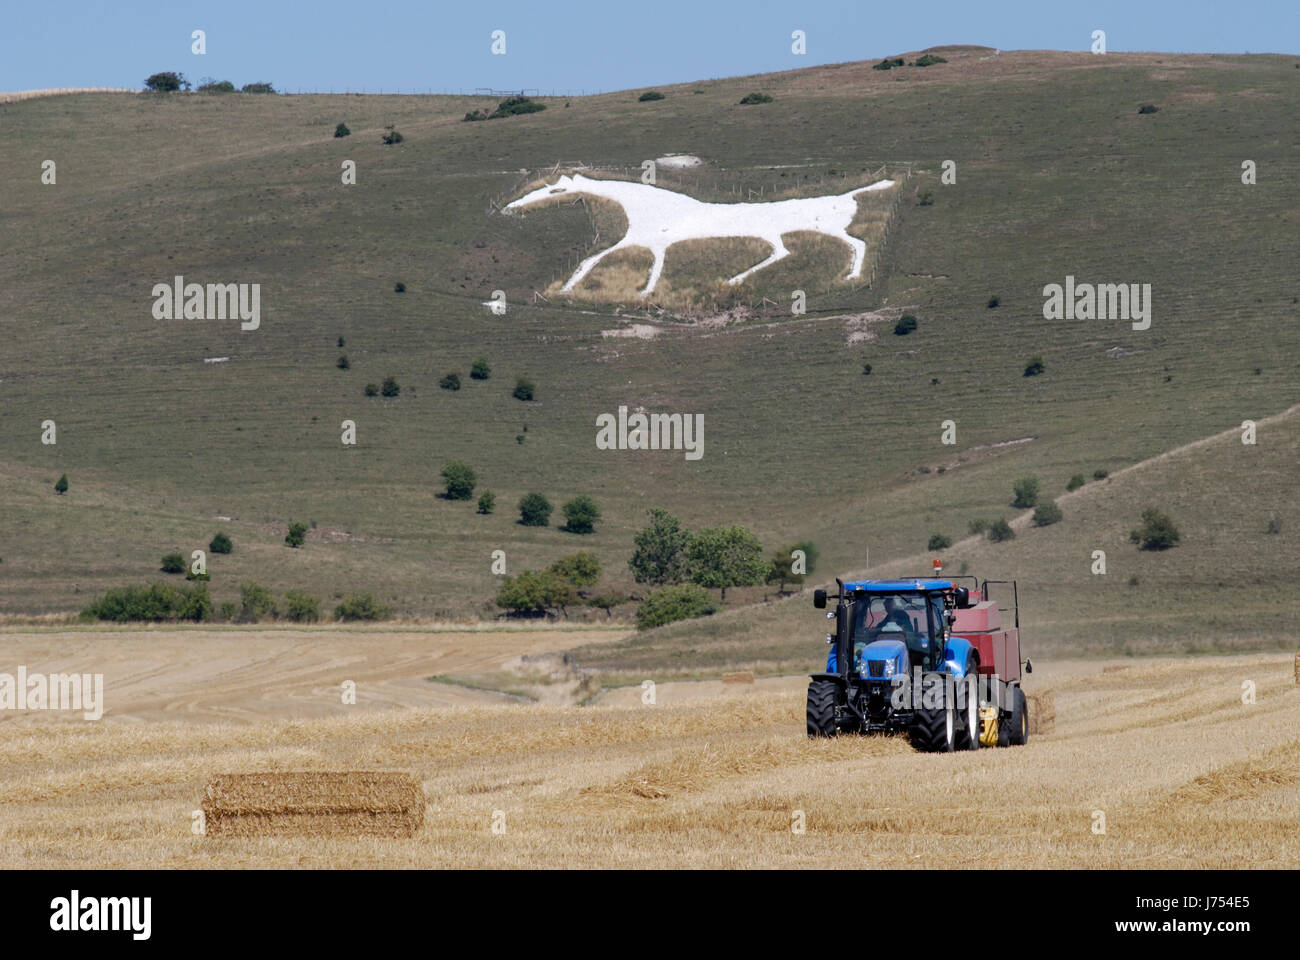 Pferd zu ernten England Traktor Kreide weiße Hügel Landwirtschaft Landwirtschaft Feld Dunst Stockfoto